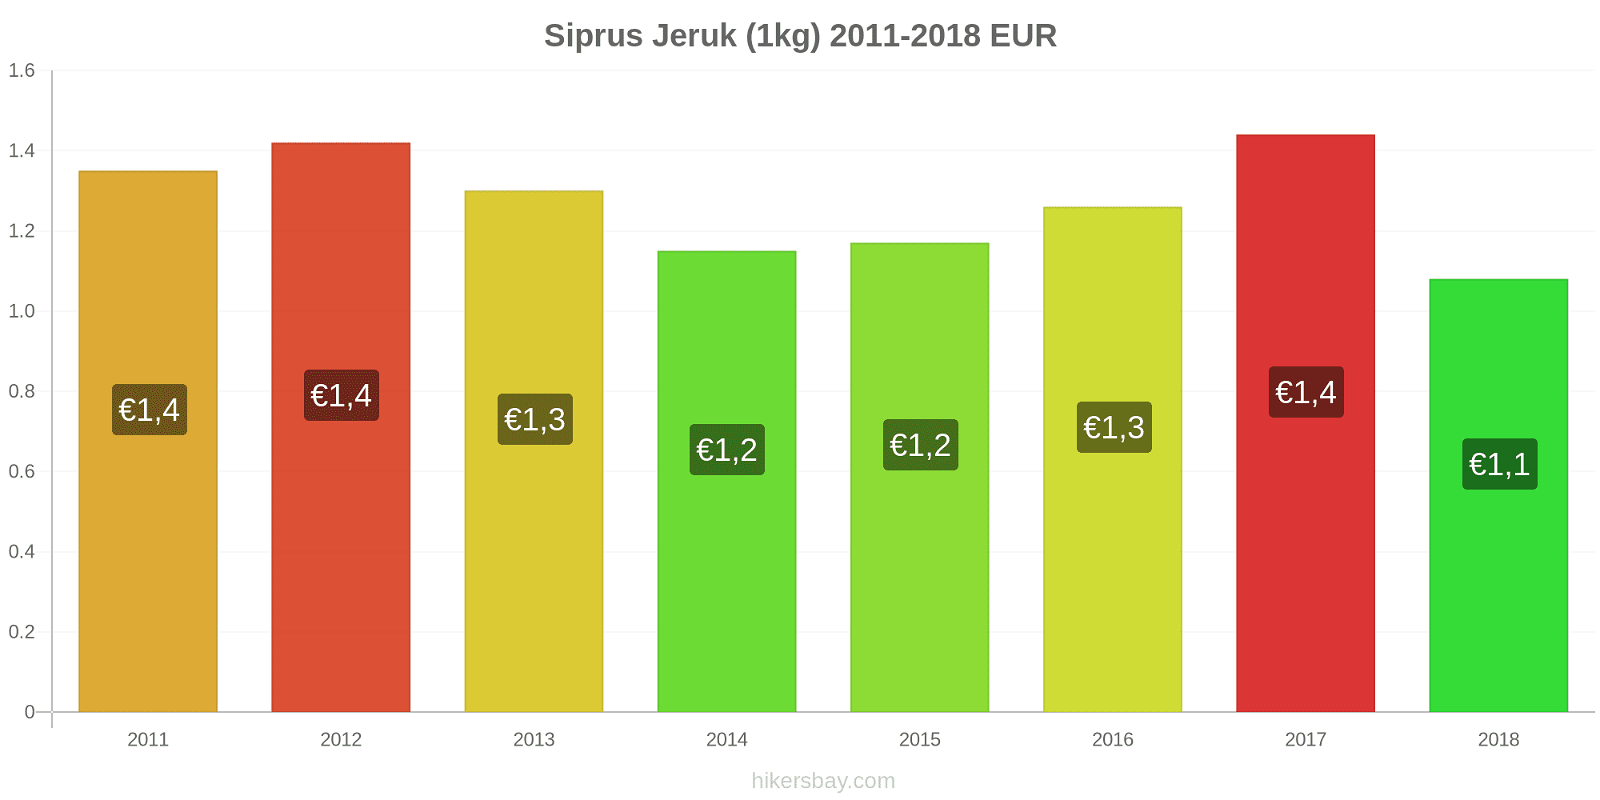 Siprus perubahan harga Jeruk (1kg) hikersbay.com